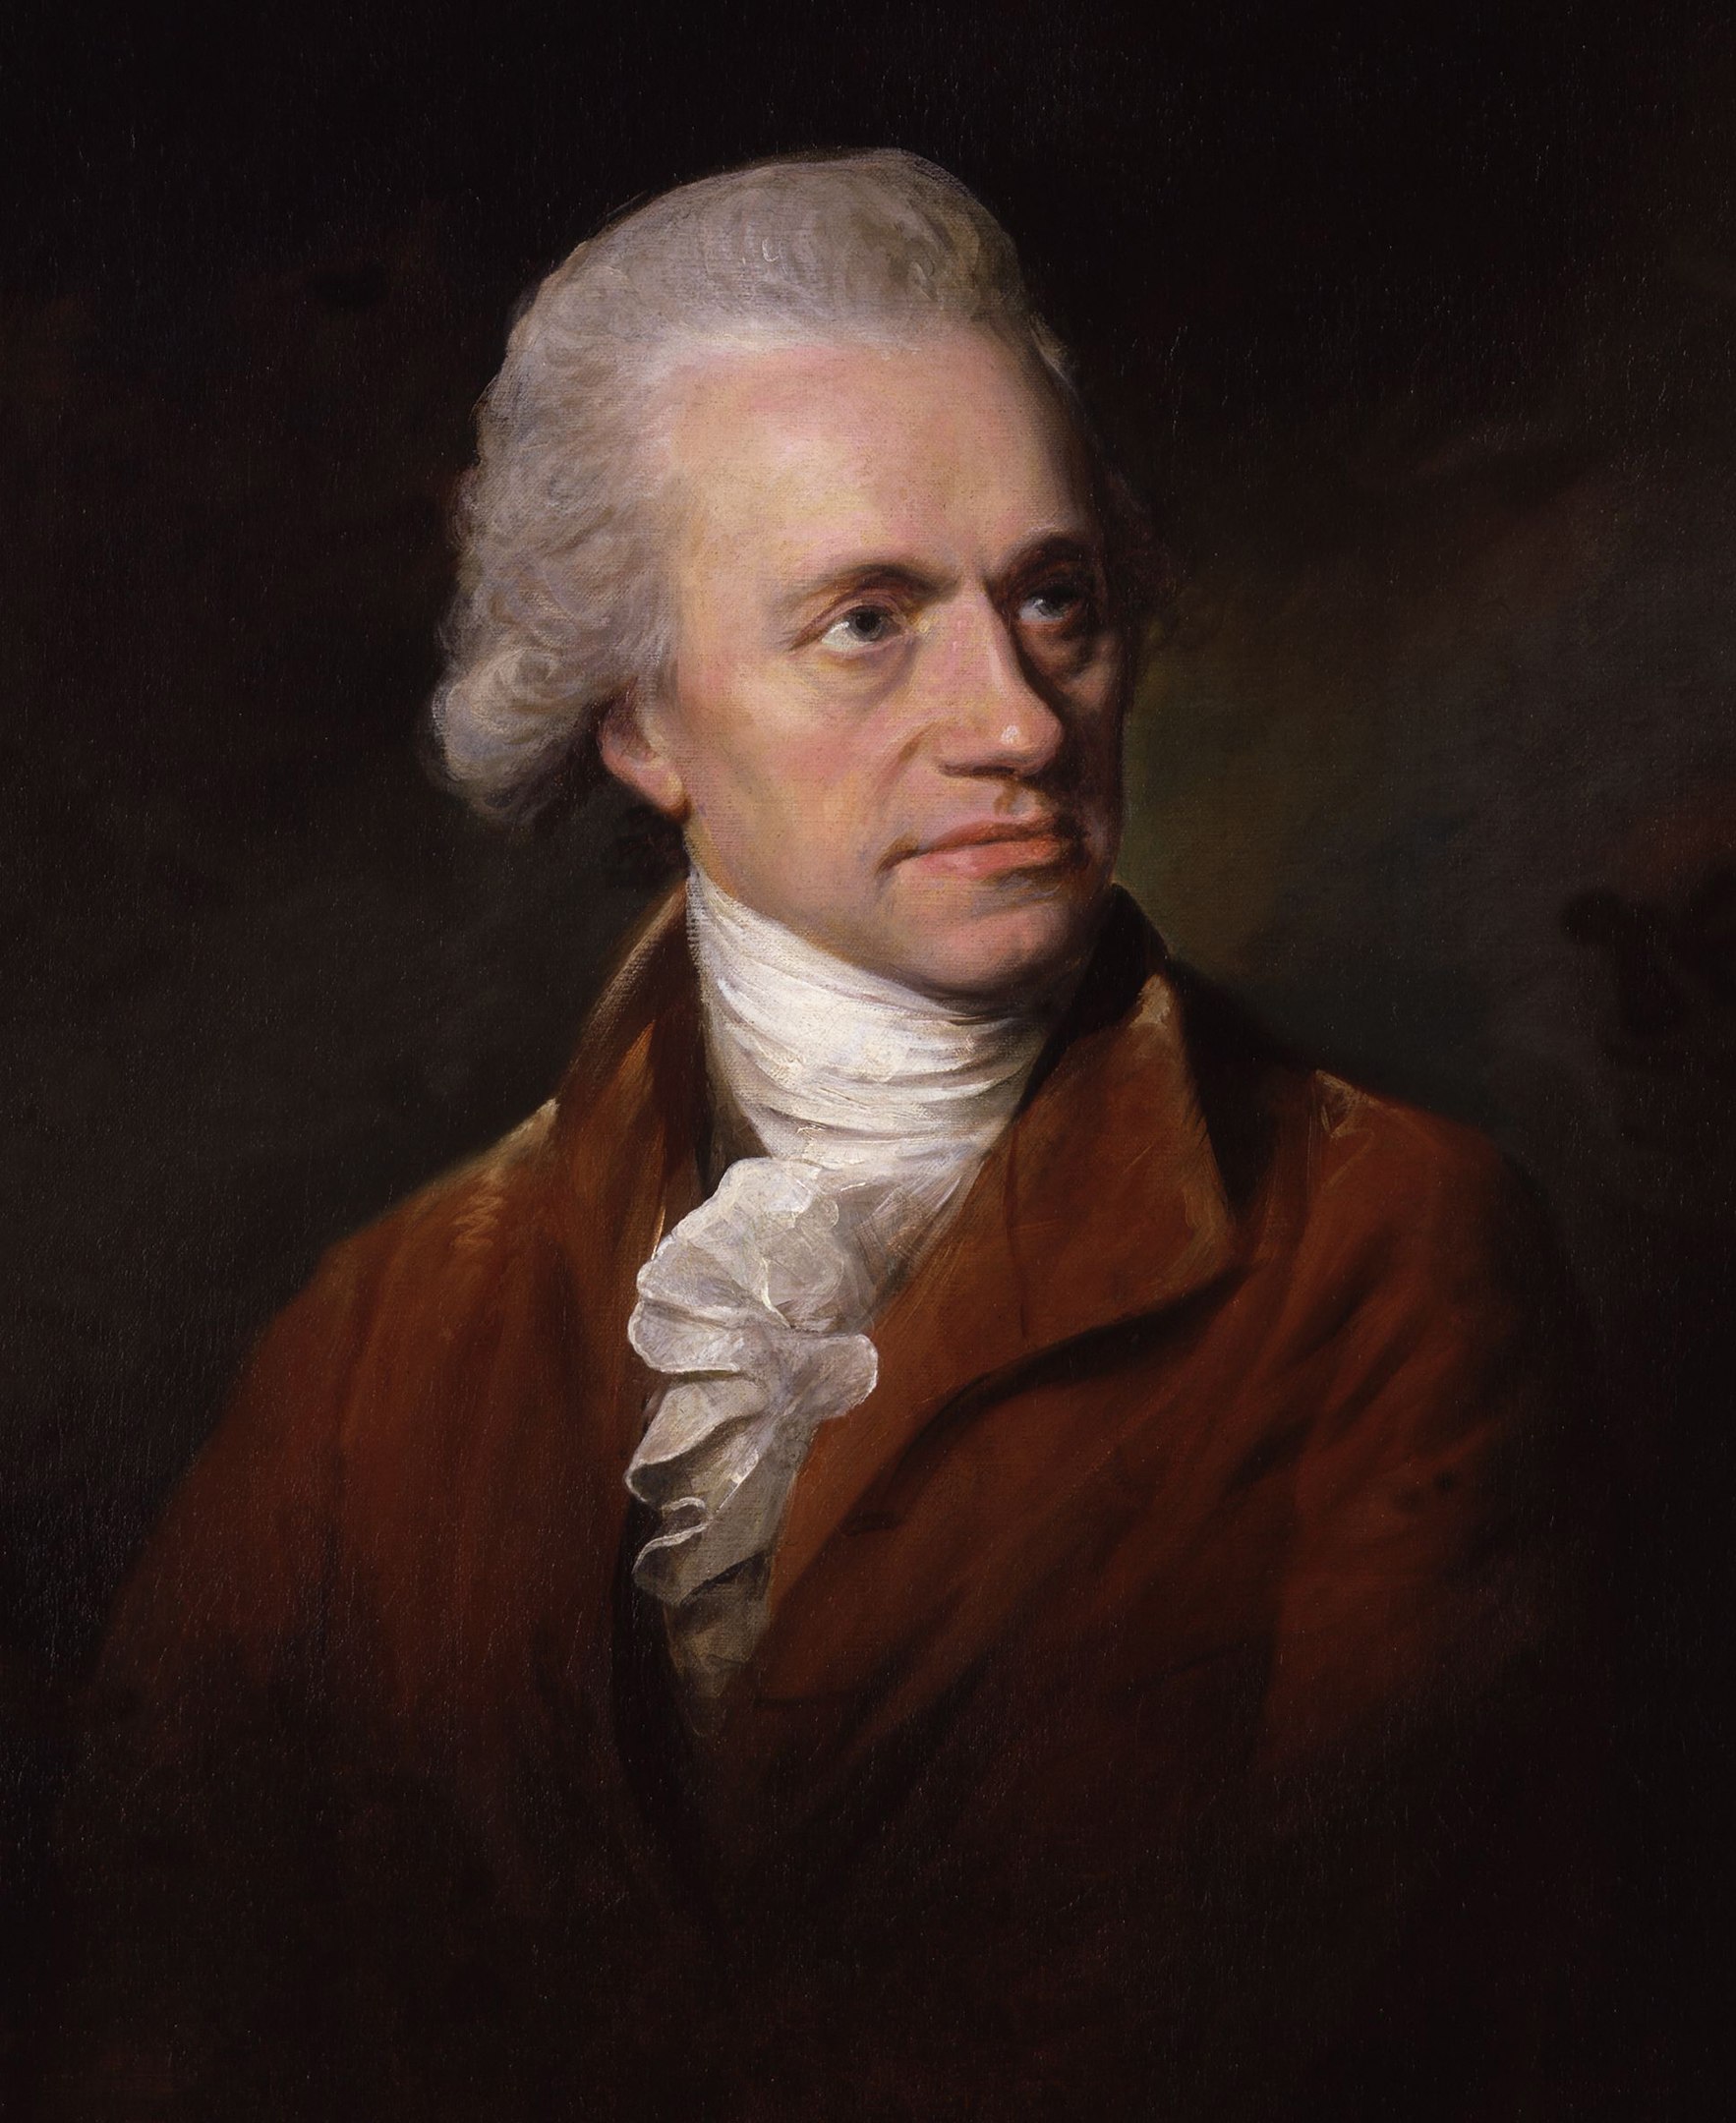 Aquarius Facts, William Herschel